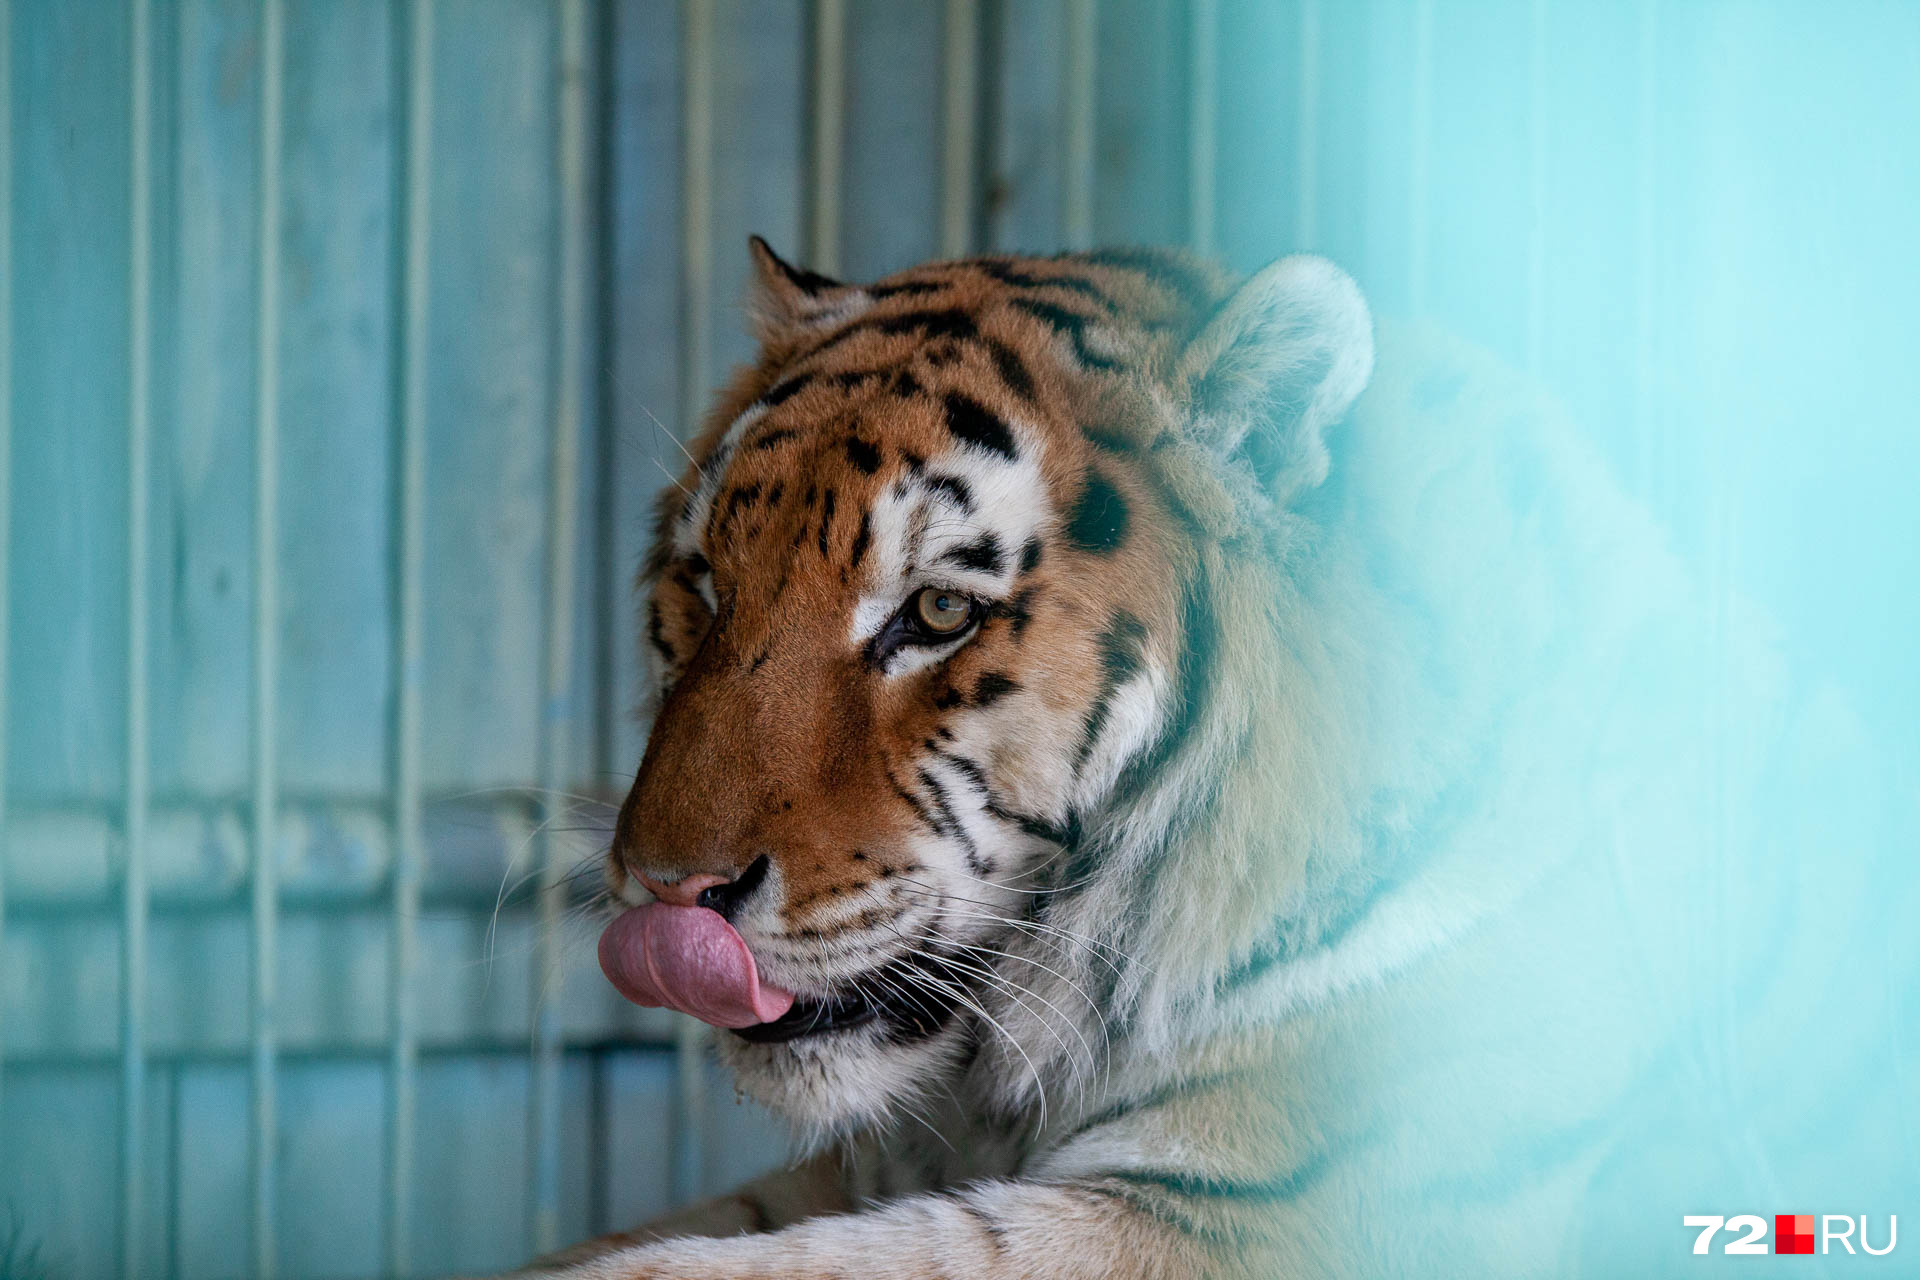 Амурские тигры, как Тоша, занесены в Красную книгу. В Тюменской области на таких больше посмотреть негде